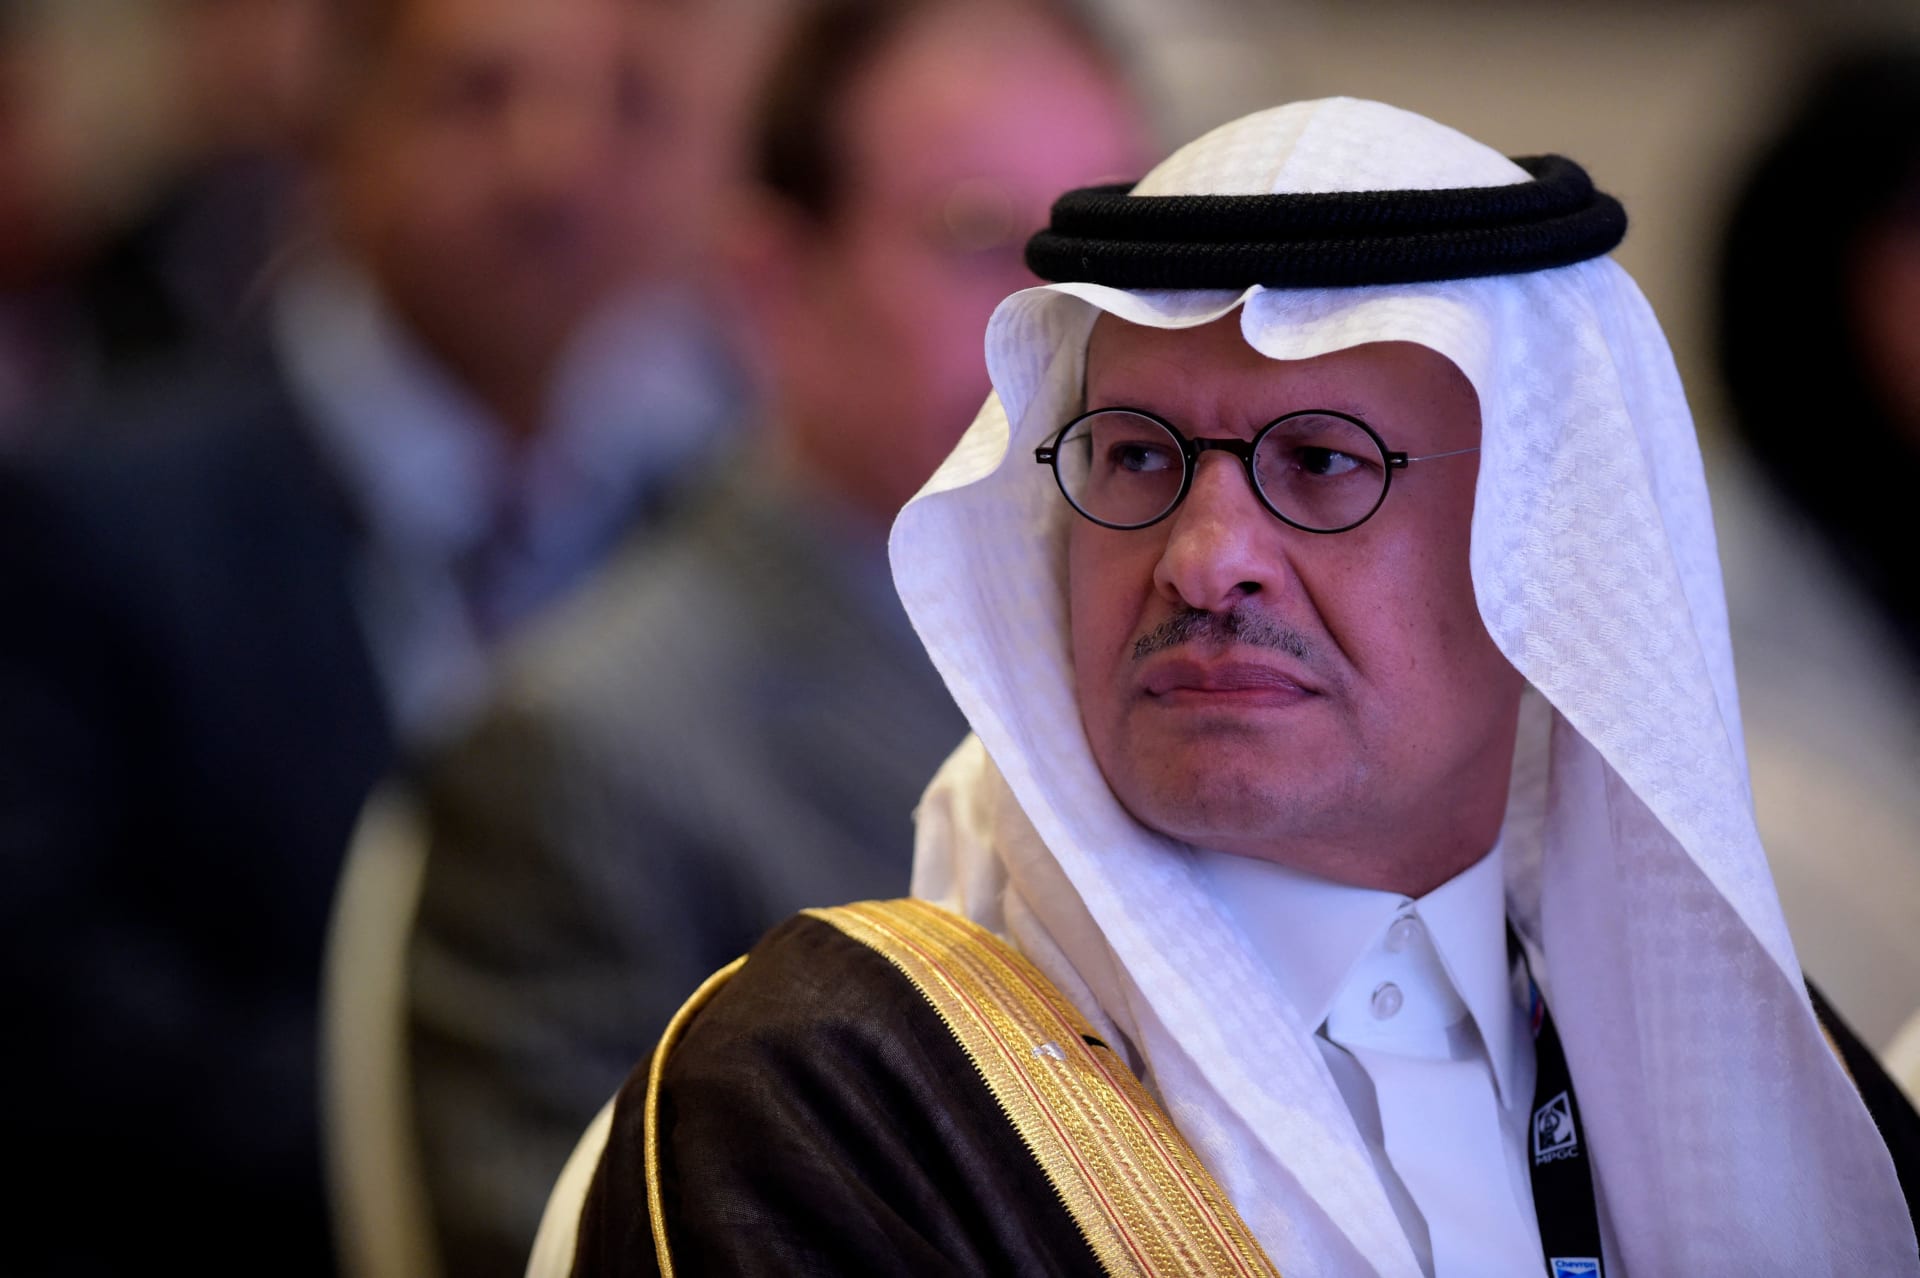  وزير الطاقة السعودي يوضح سبب خفض إنتاج "أوب بلس" إنتاجها بـ100 ألف برميل